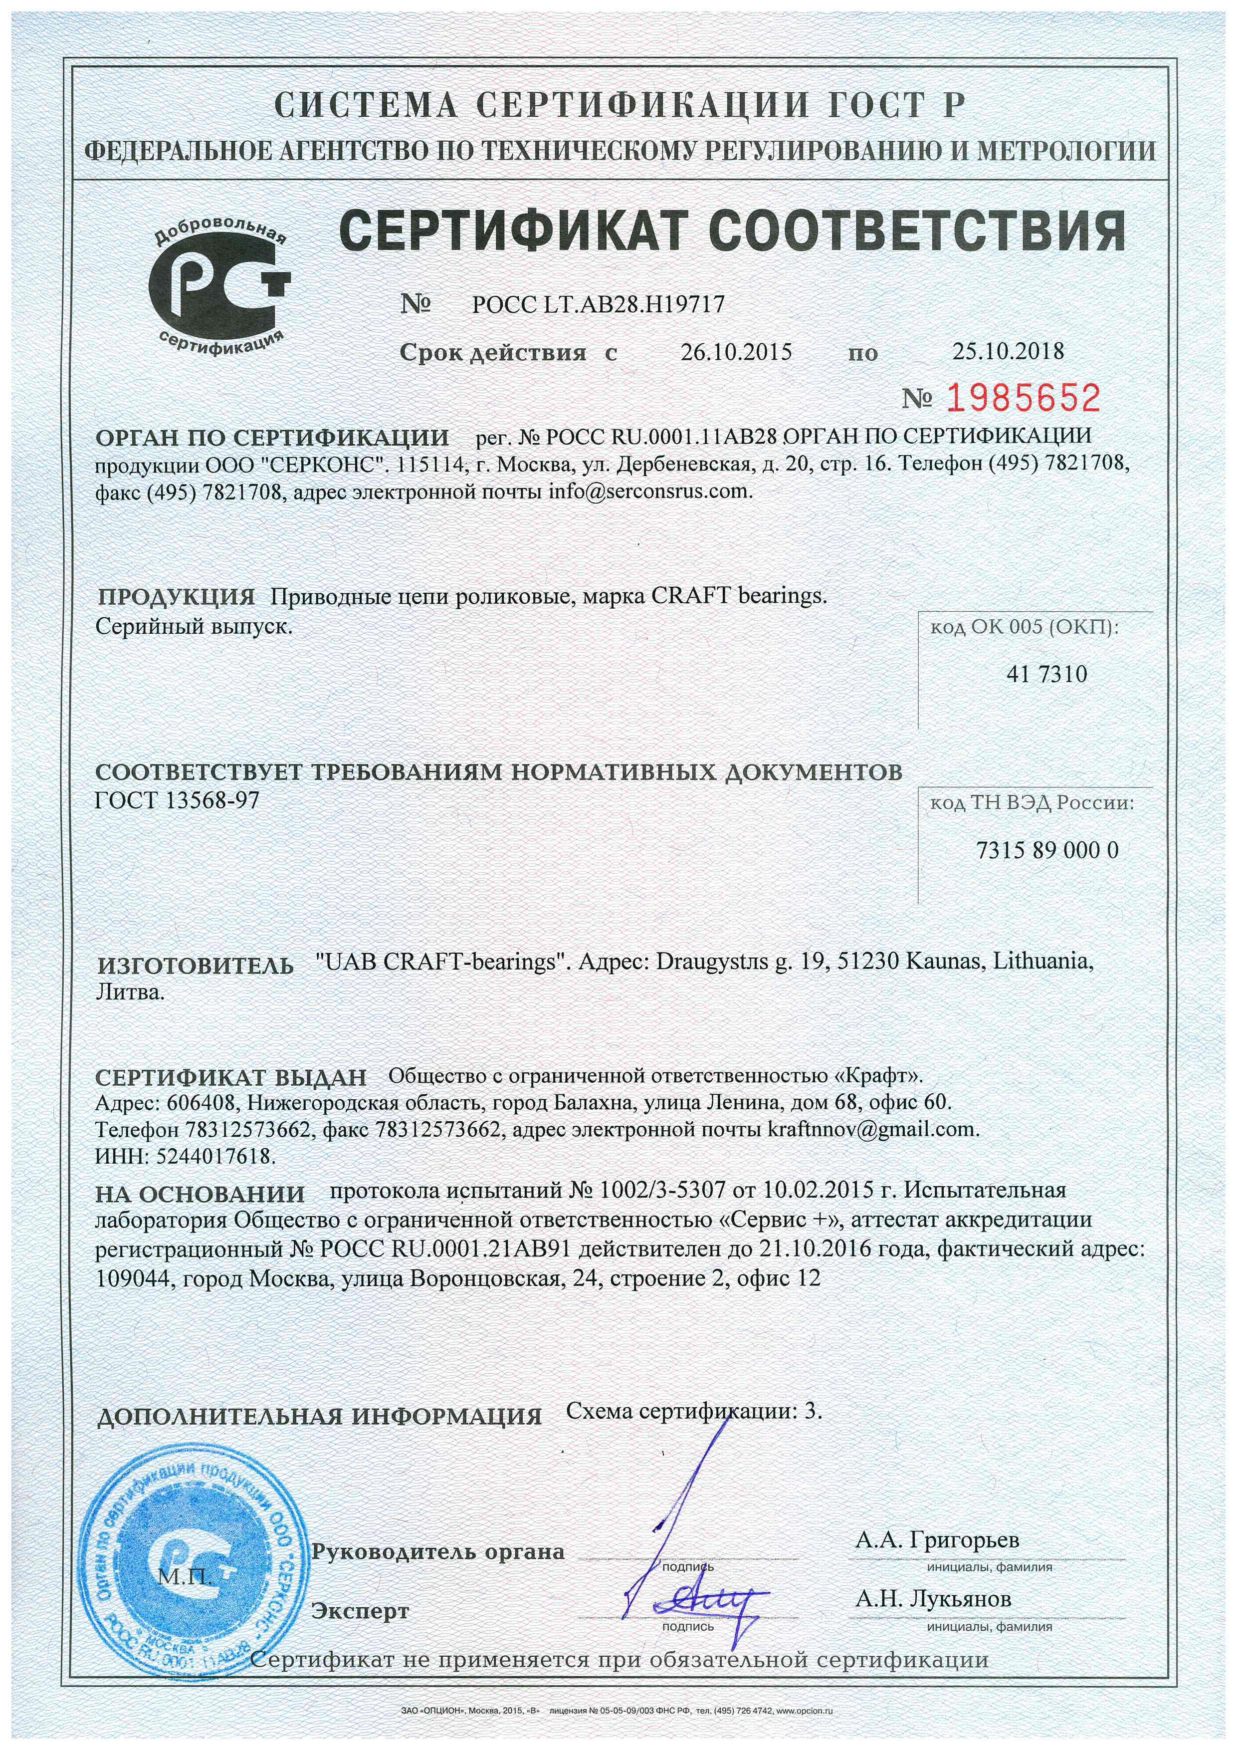 Сертификат соответствия продукции Craft